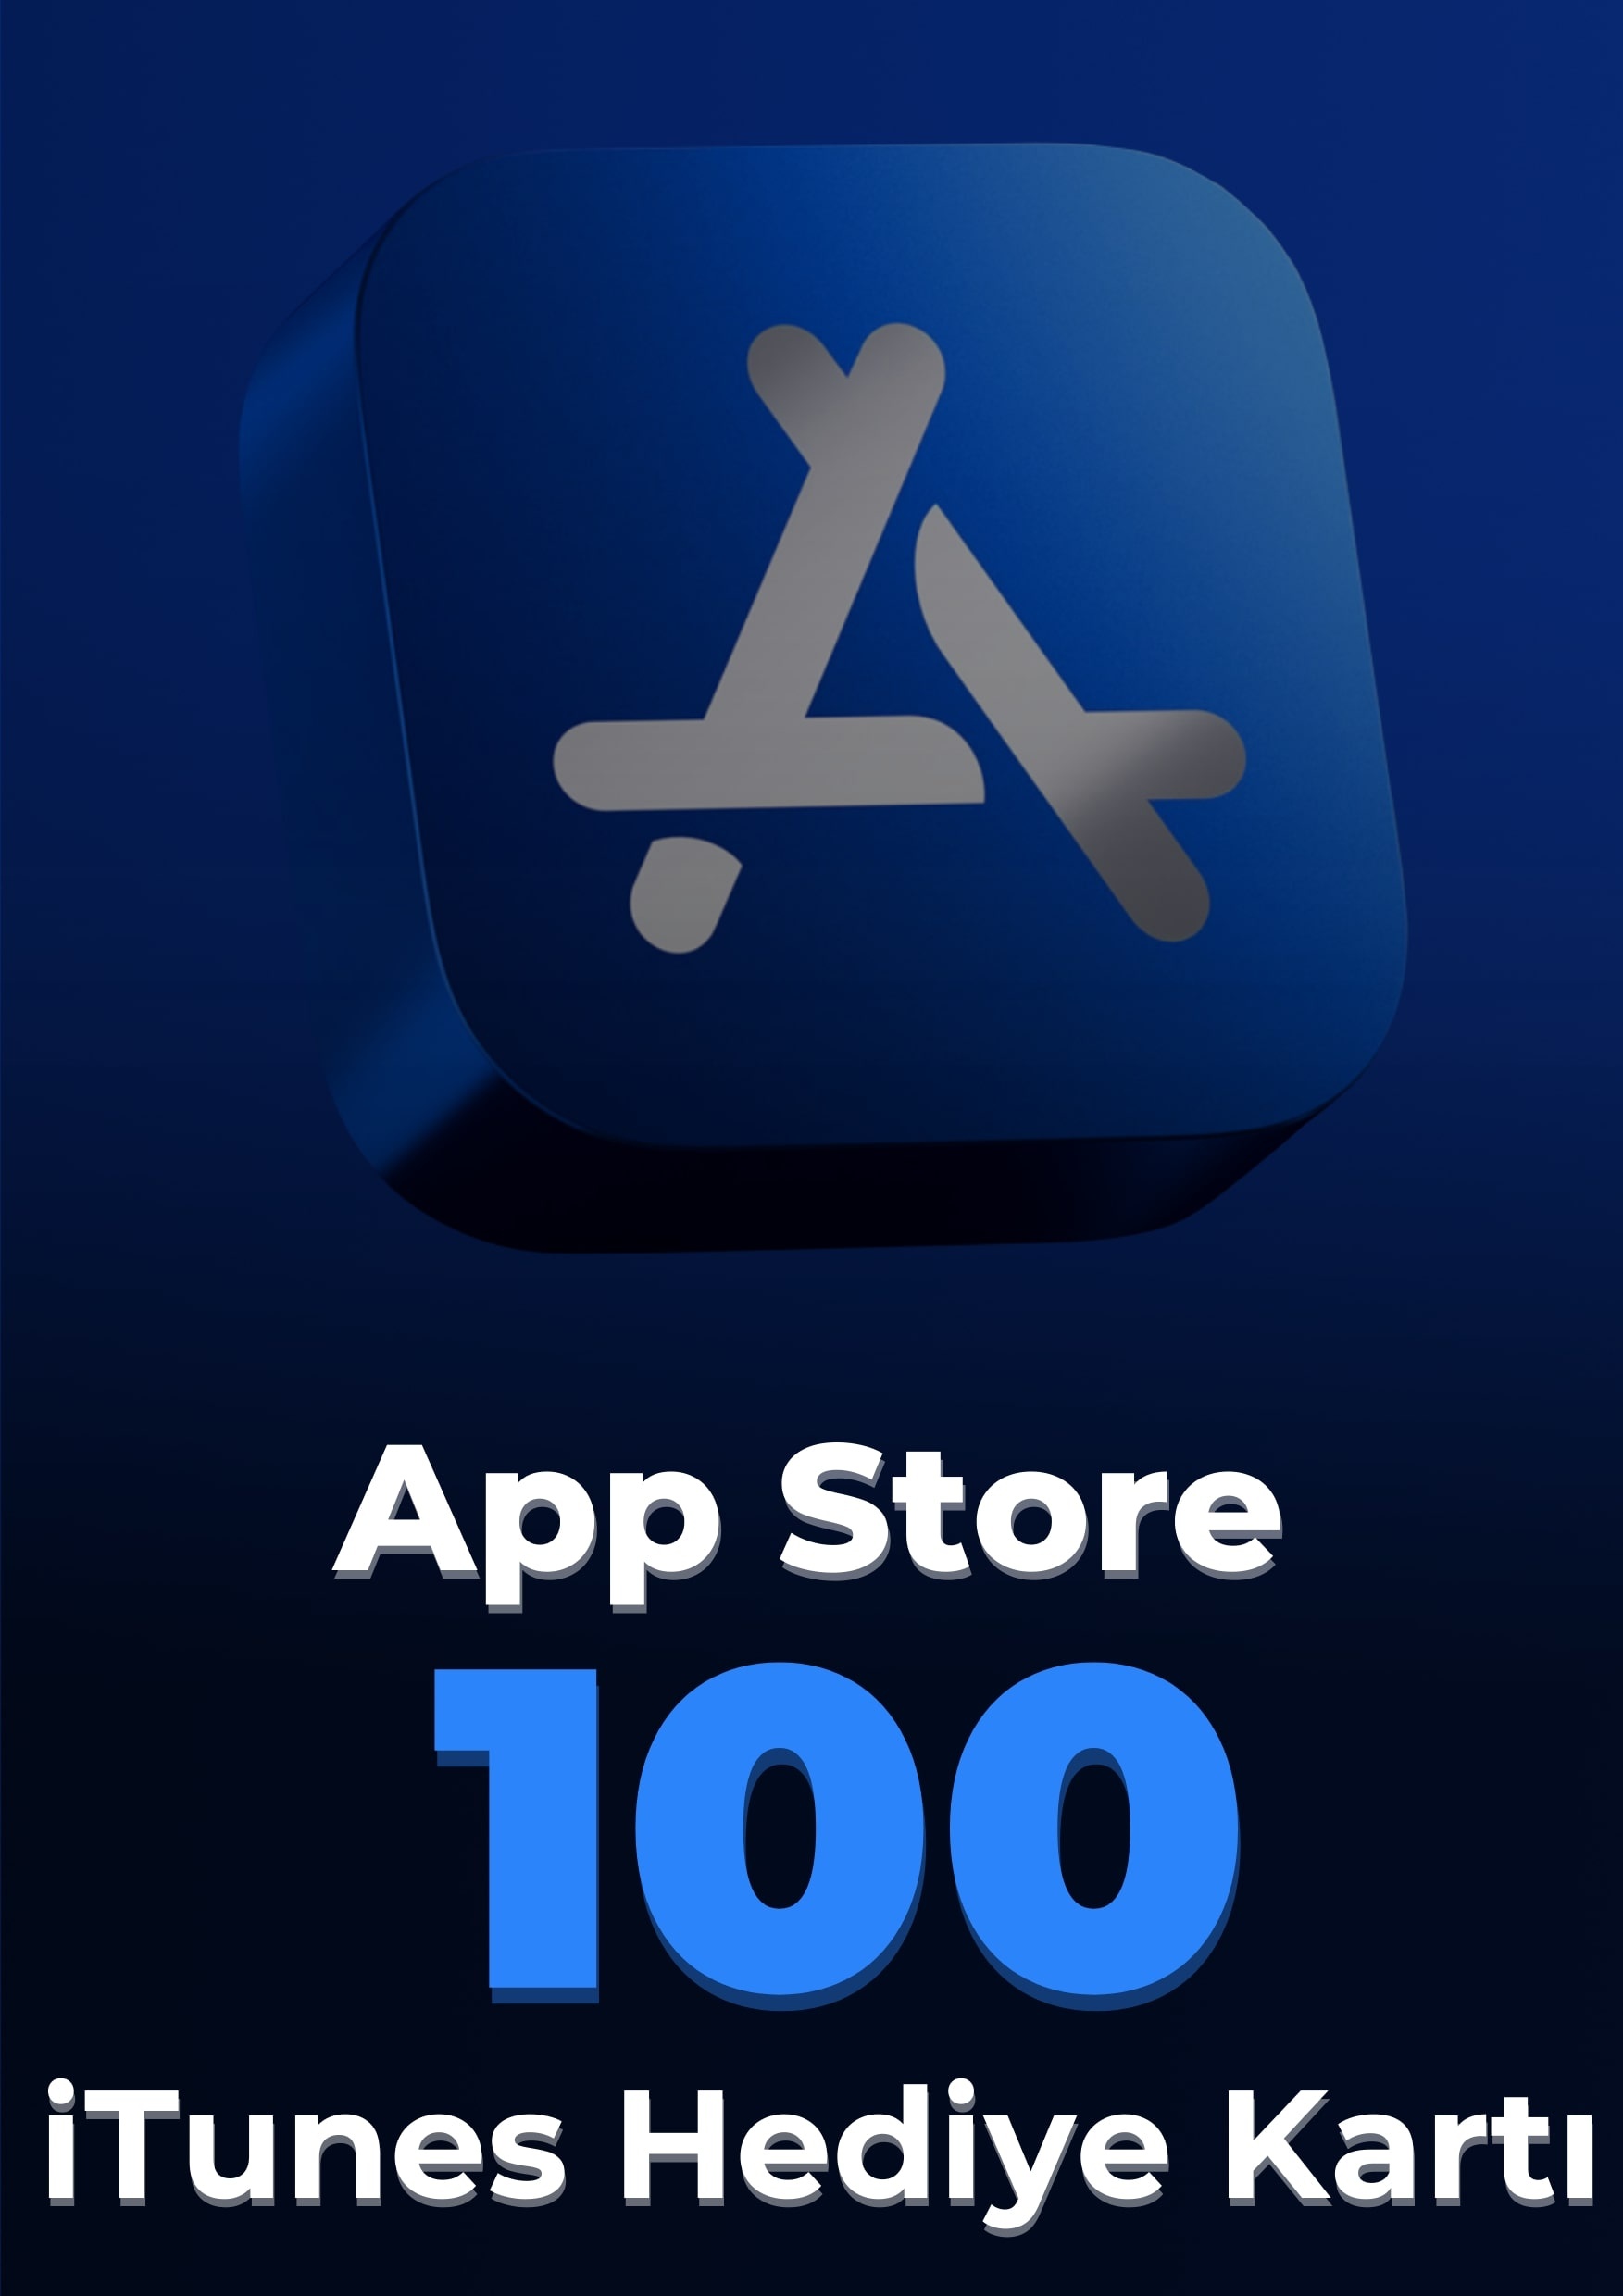 App Store iTunes 100 TL